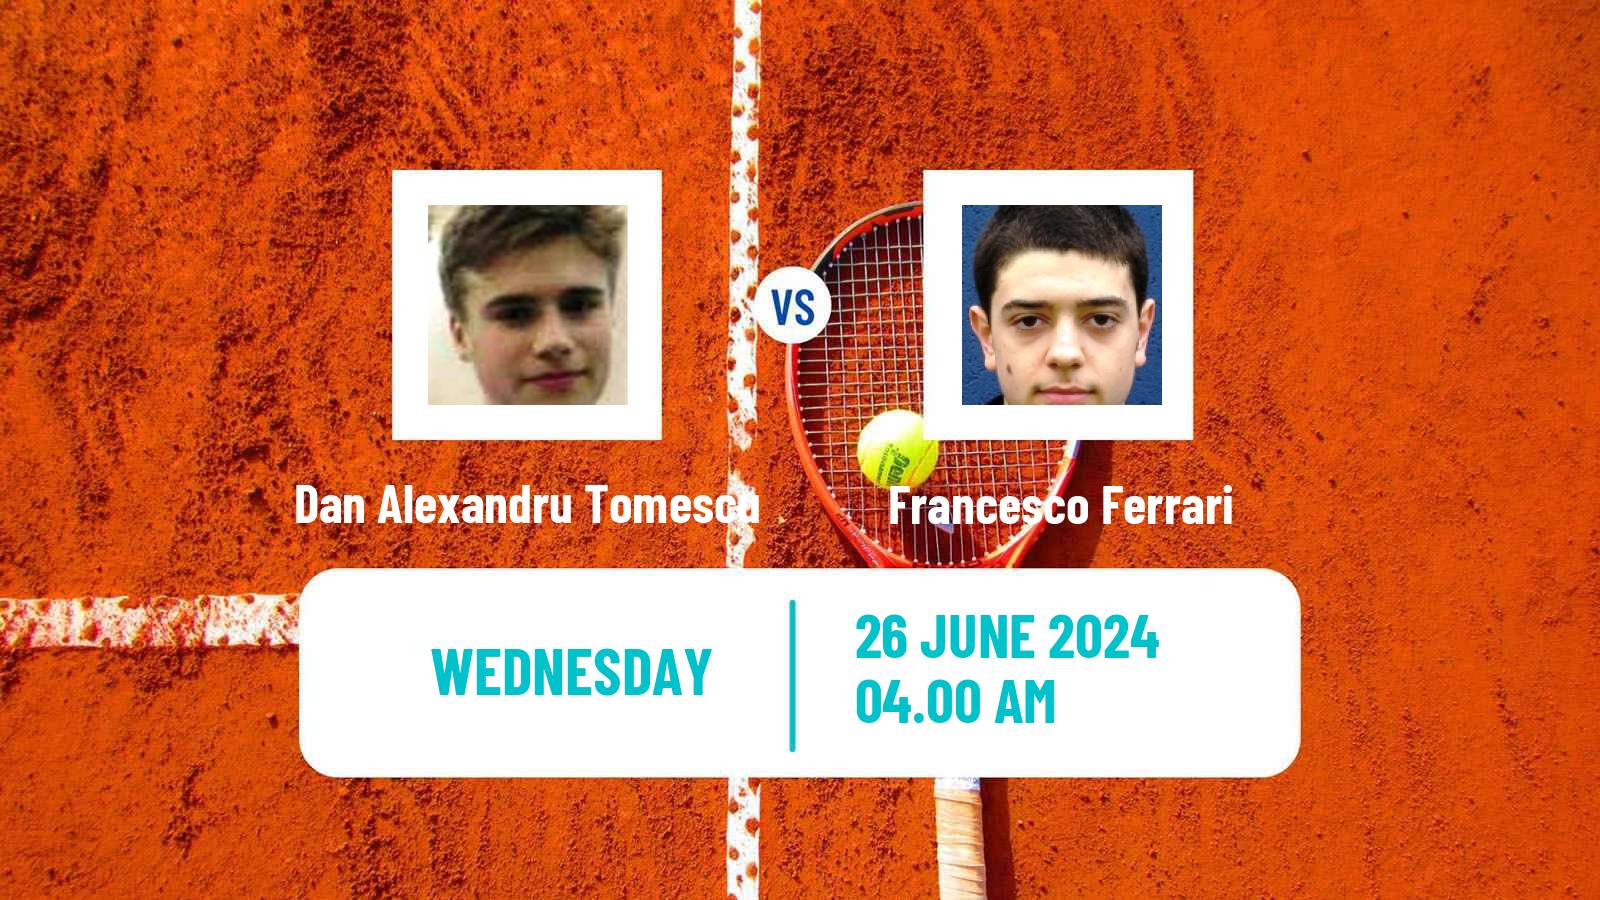 Tennis ITF M25 Satu Mare Men Dan Alexandru Tomescu - Francesco Ferrari